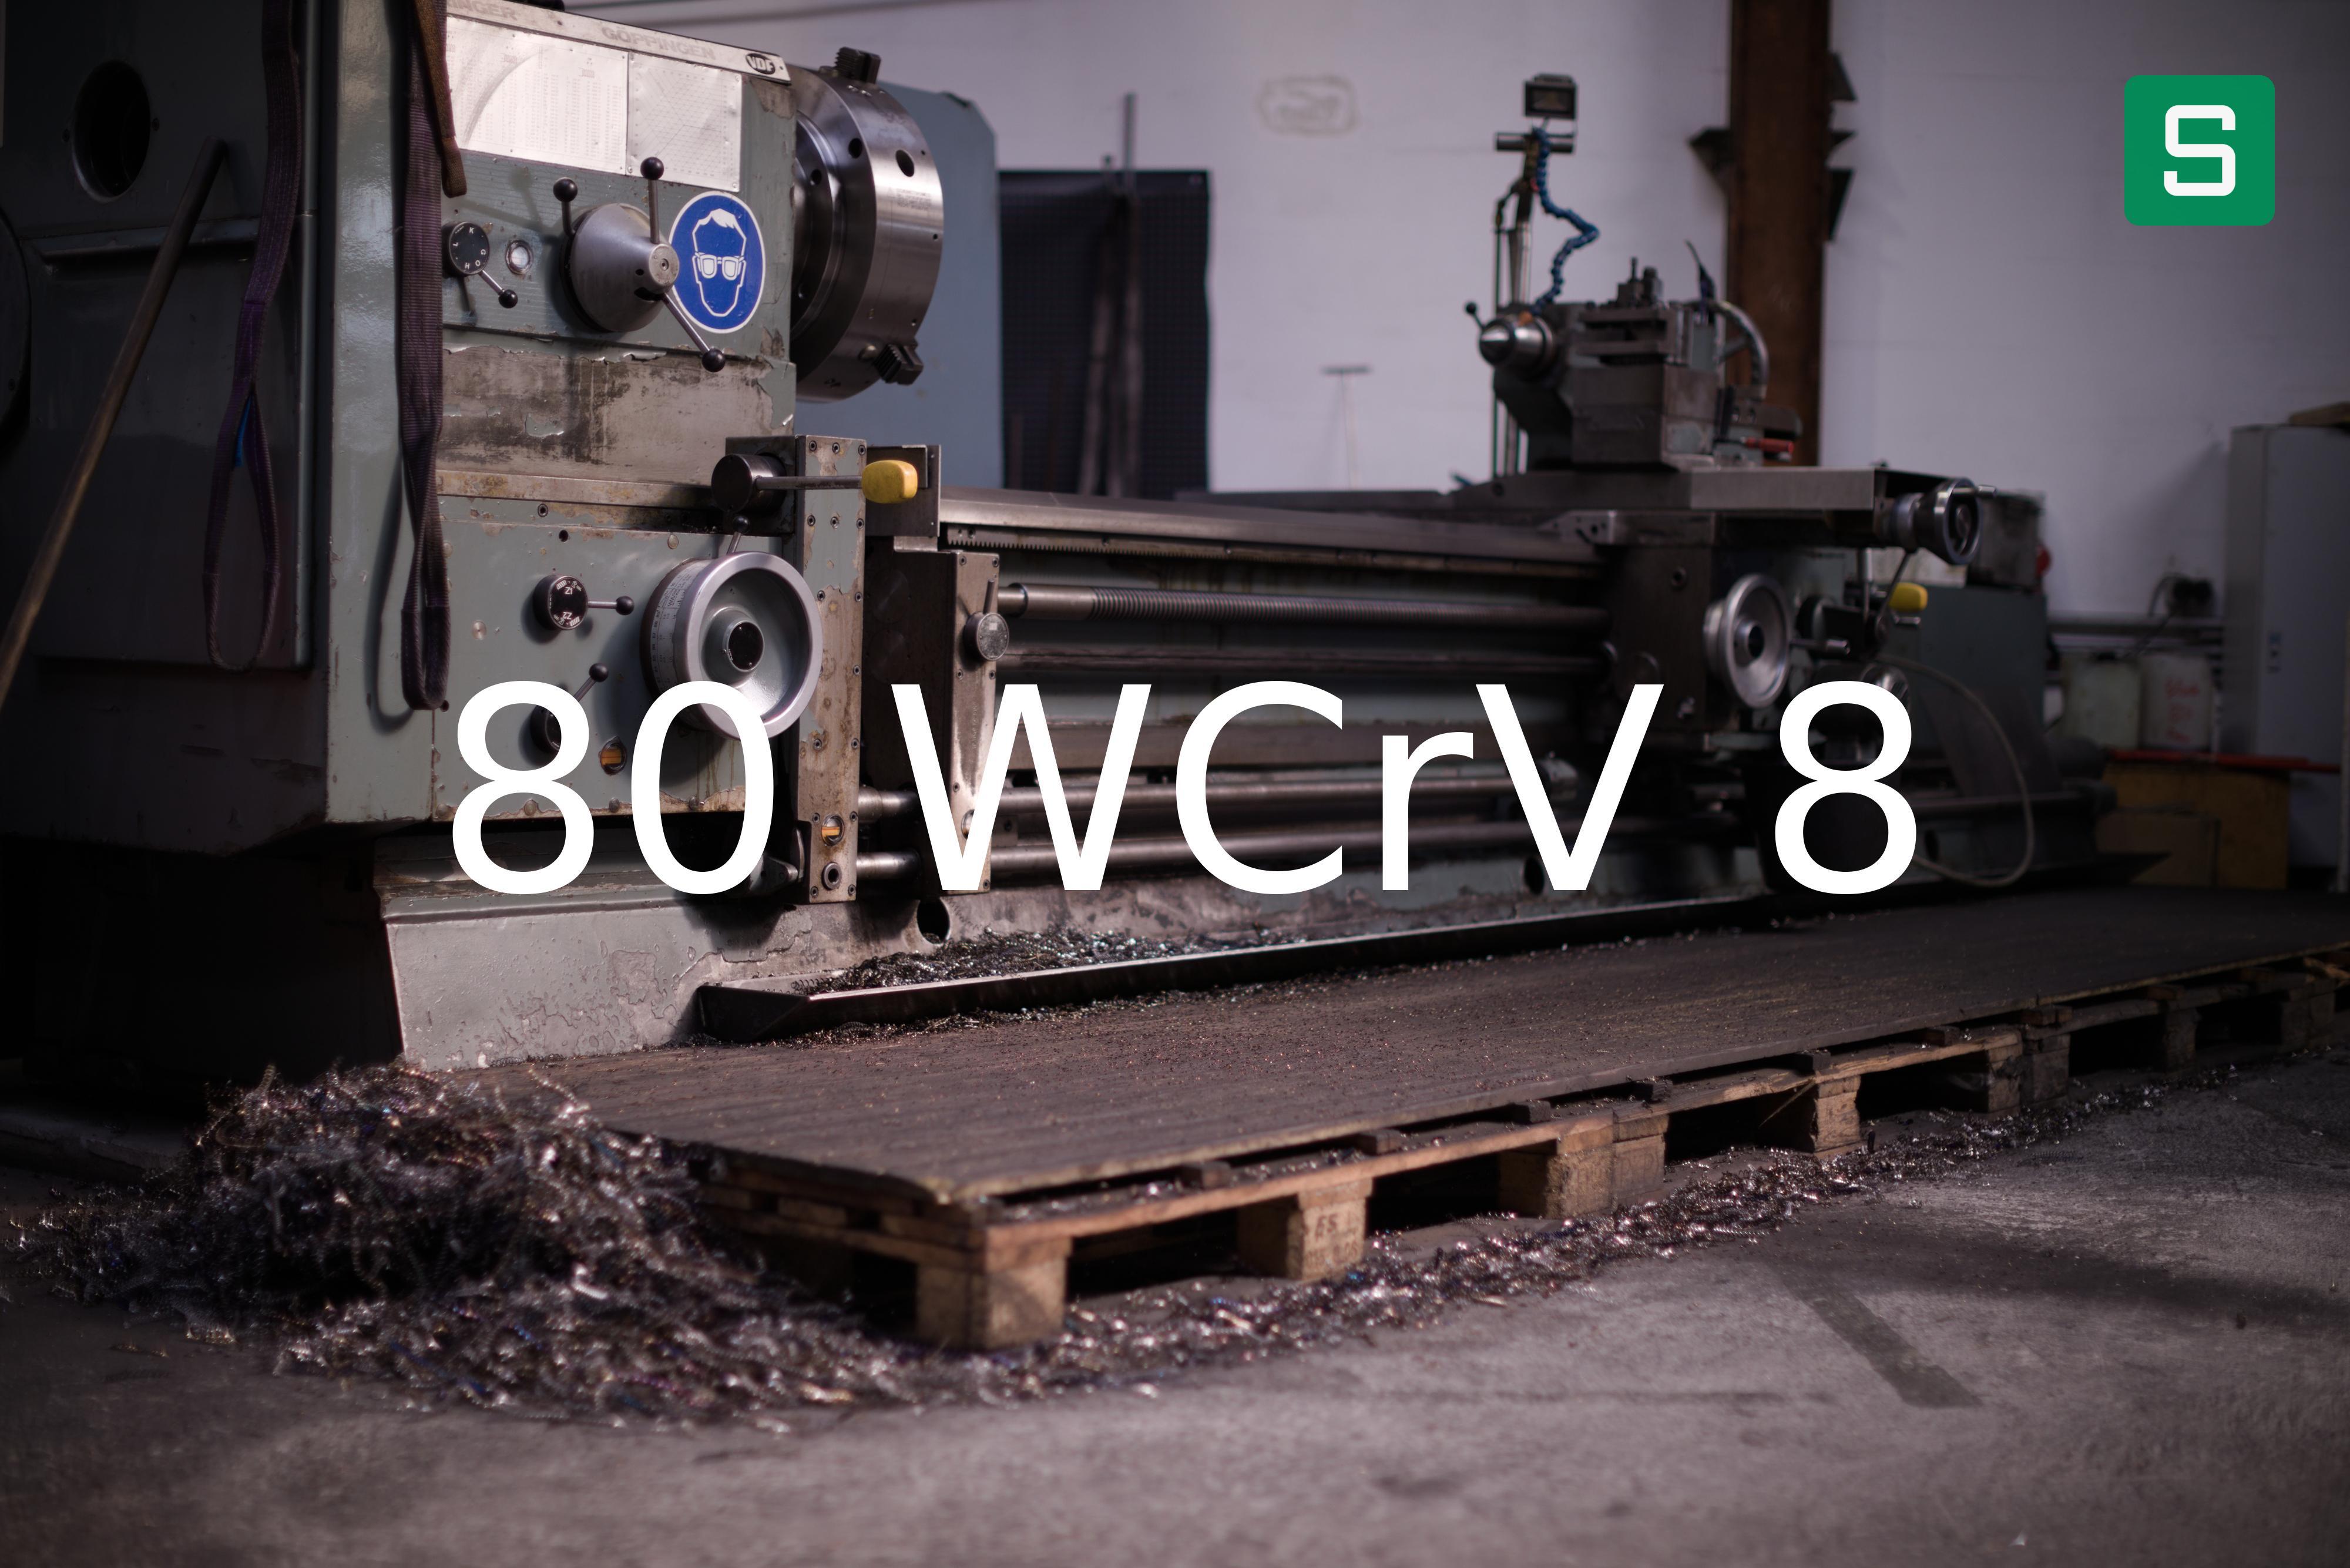 Steel Material: 80 WCrV 8